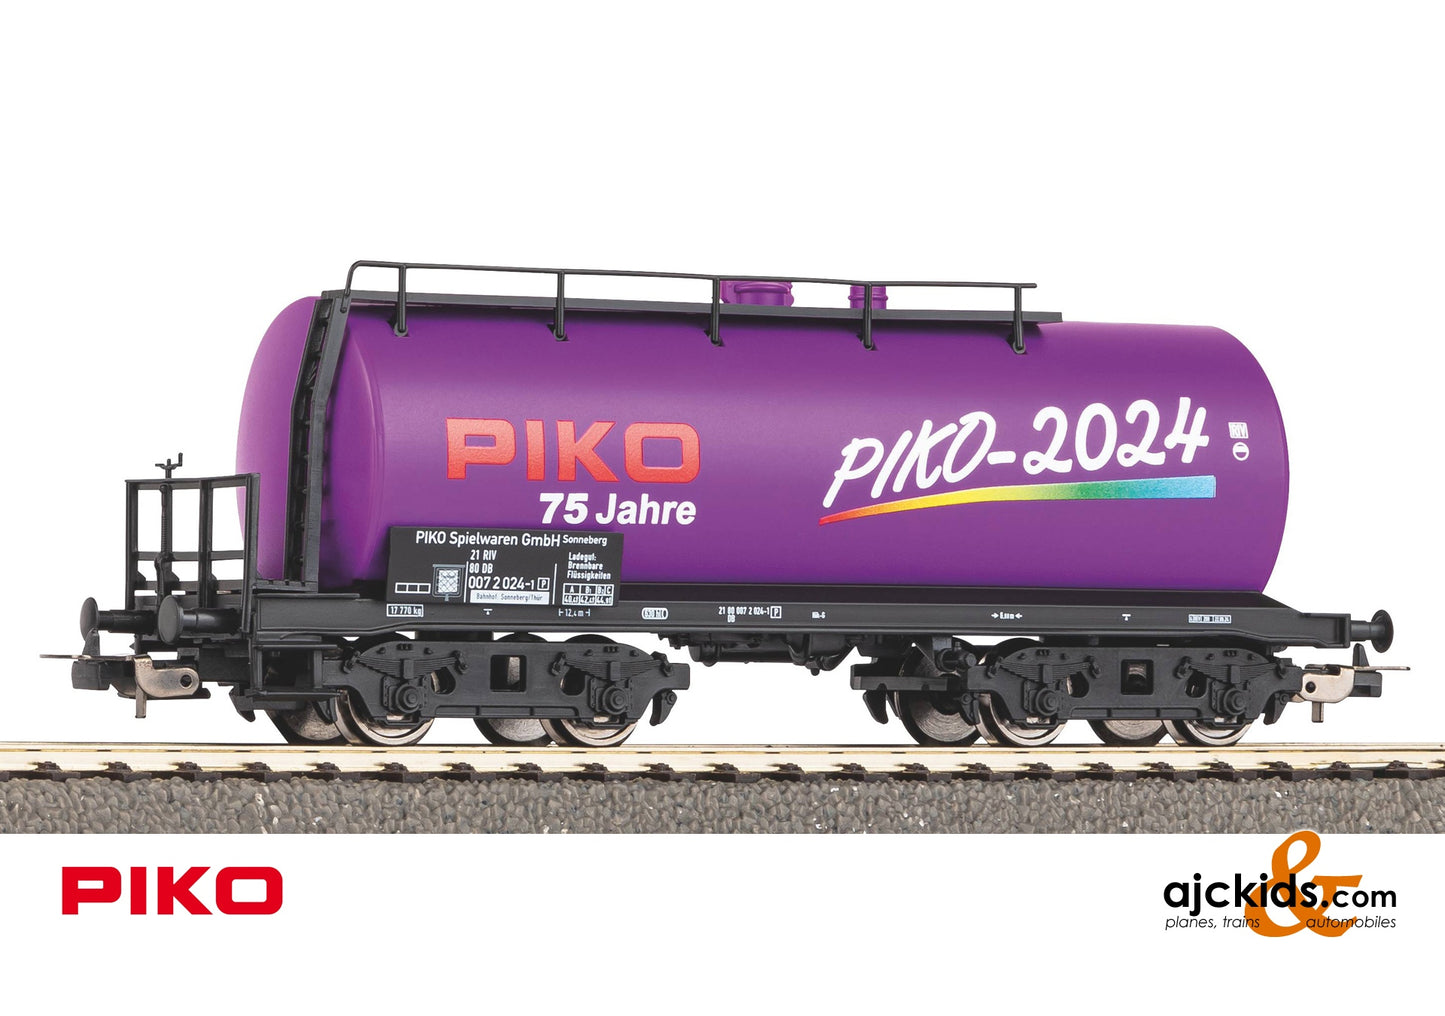 Piko 95754 PIKO 2024 Car of the Year 